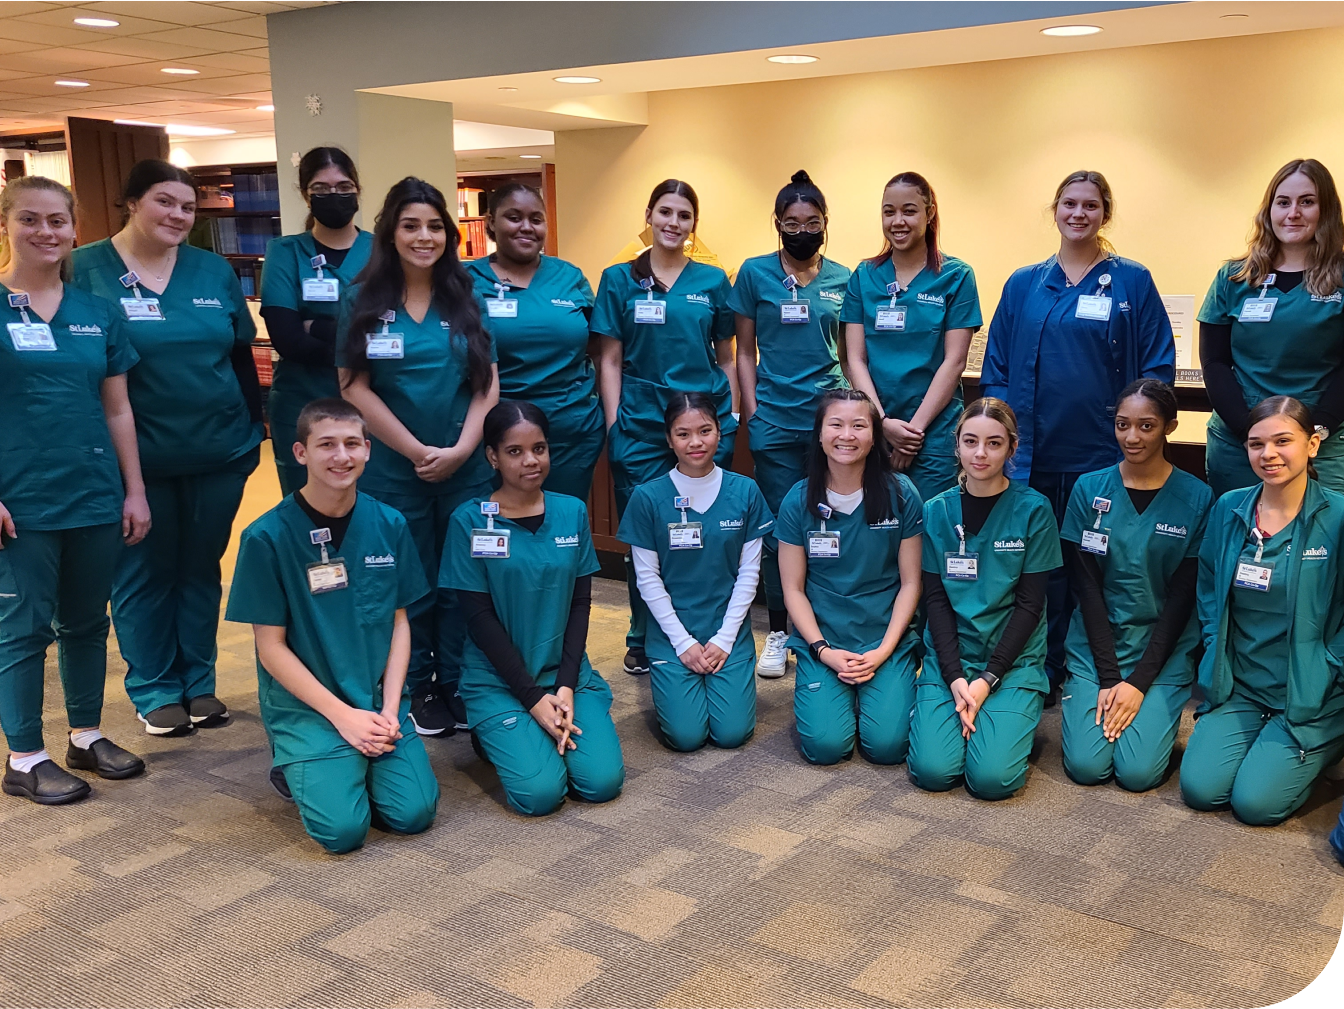 Student volunteer group in medical scrubs